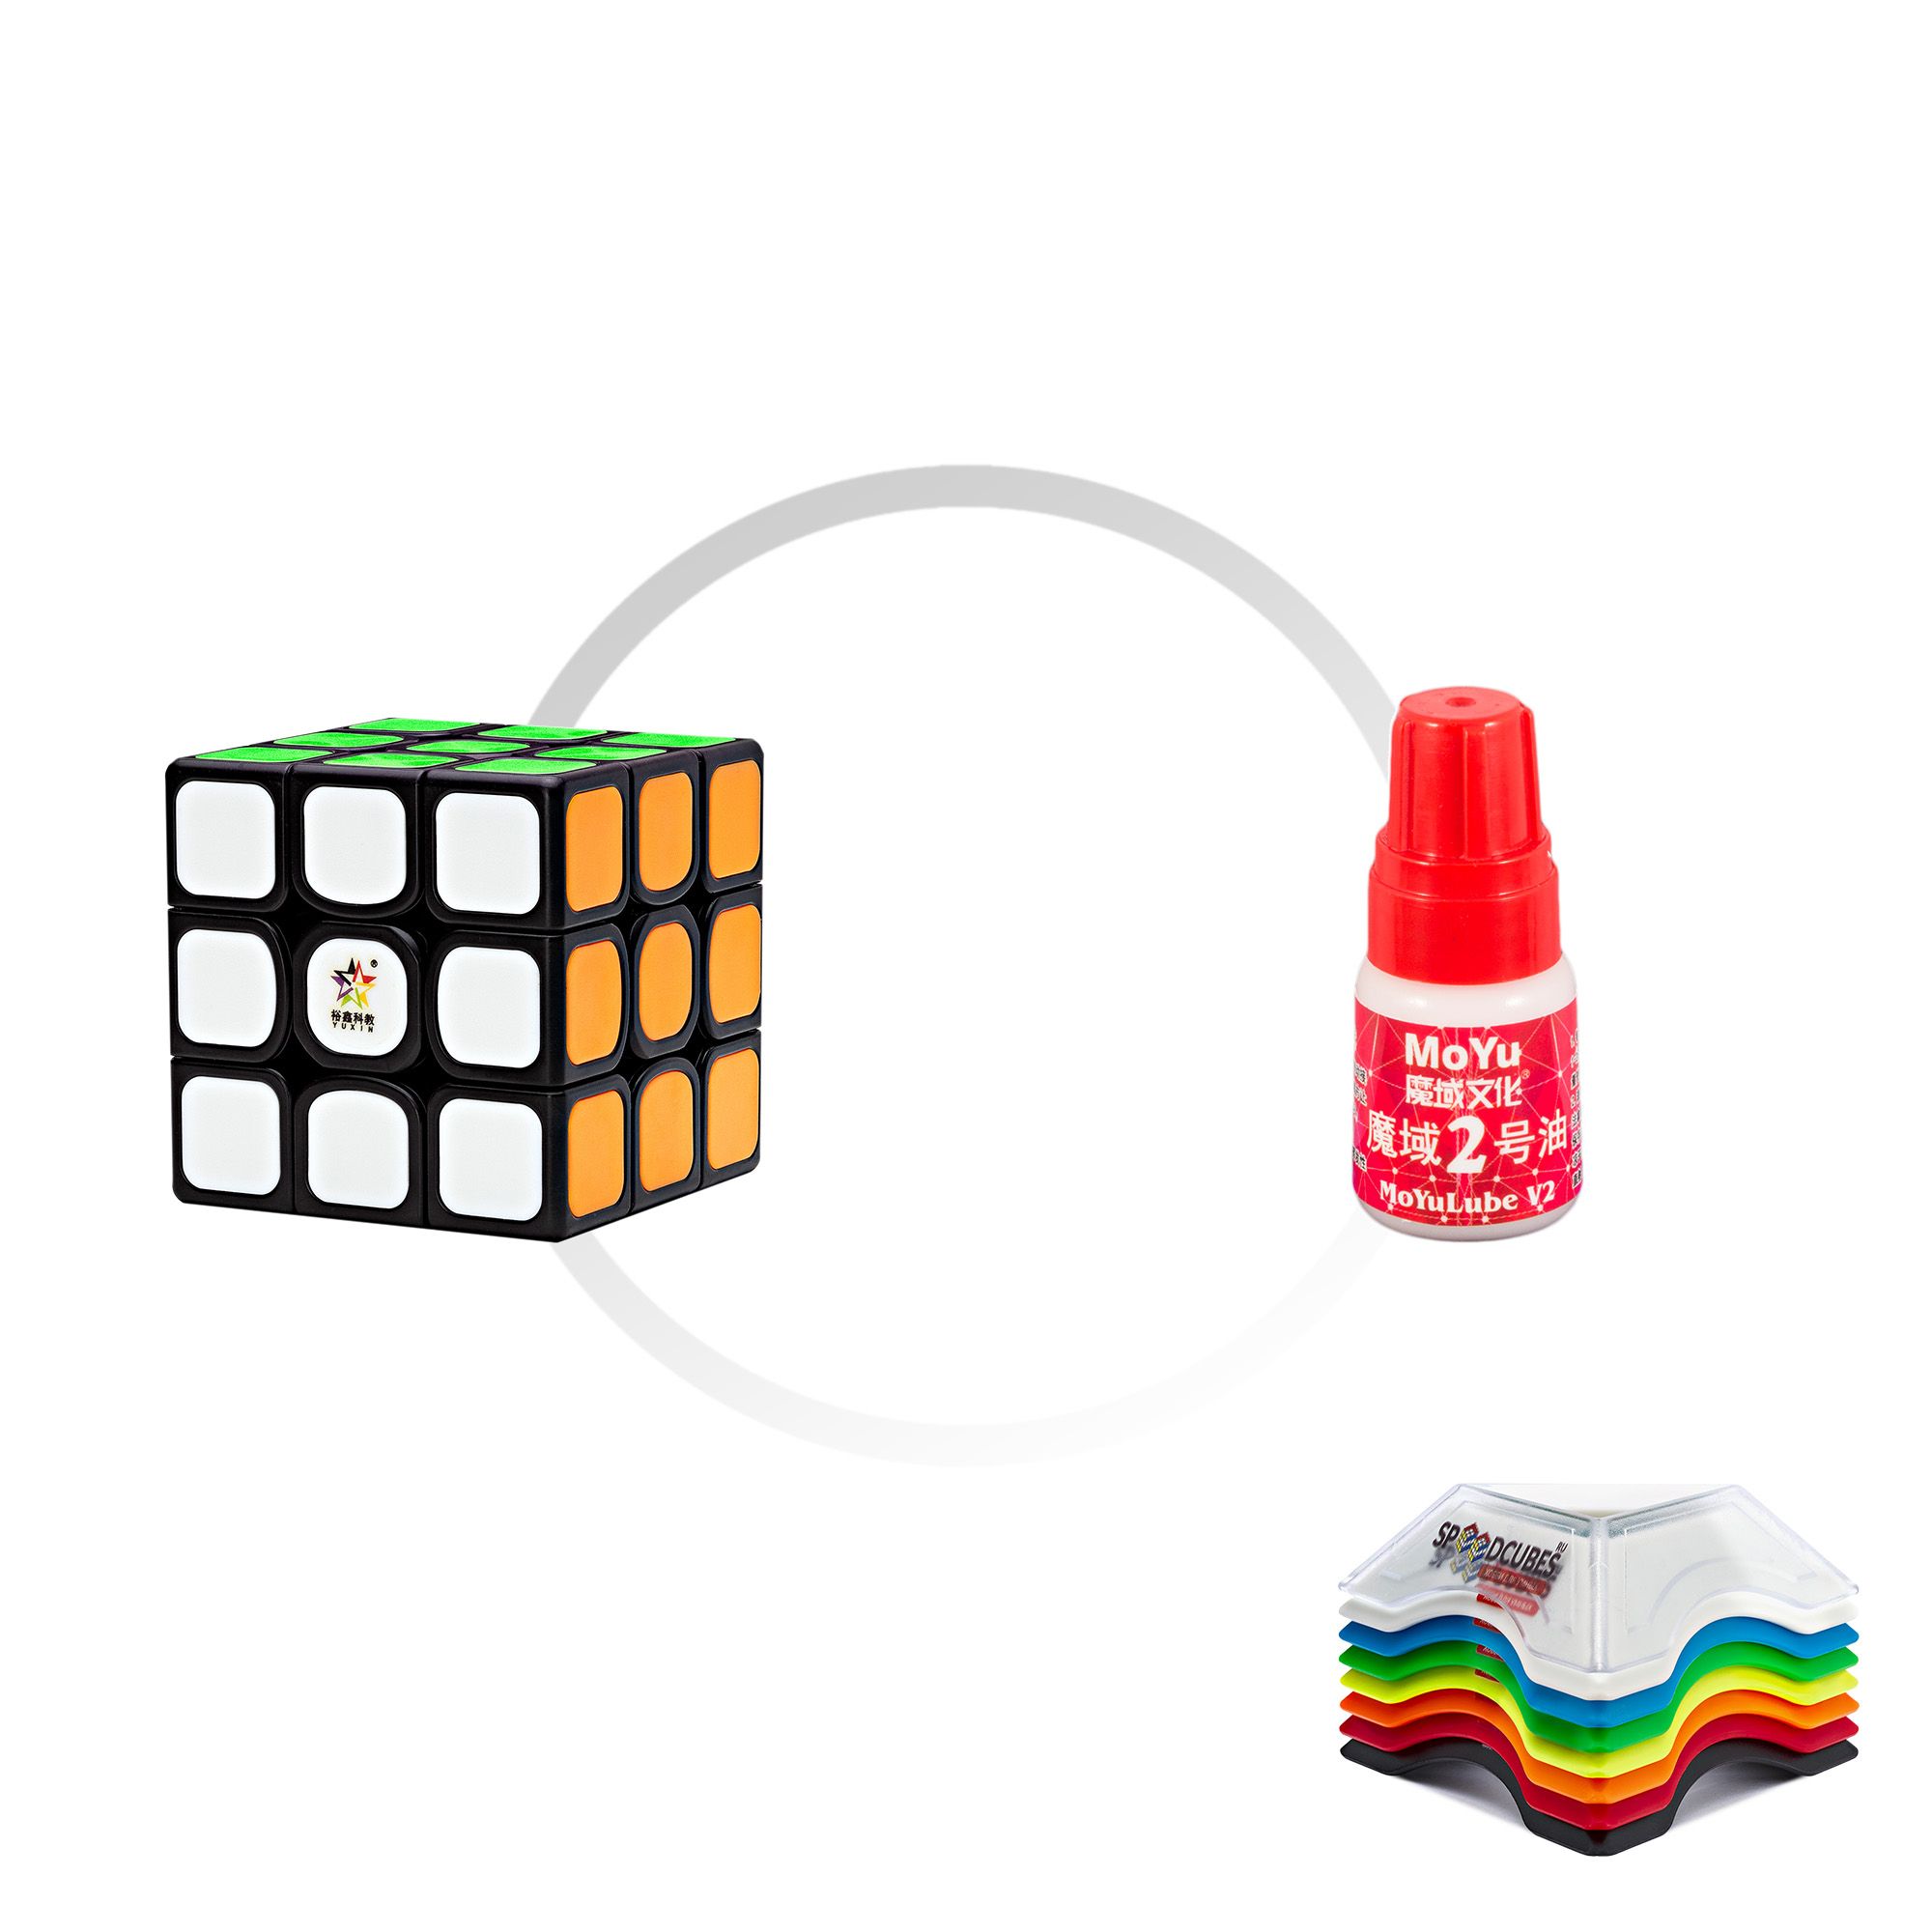 Комплект кубик Рубика скоростной YuXin Kilin Tiled v2 3x3x3 + смазка MoYu Red lube v1 + по